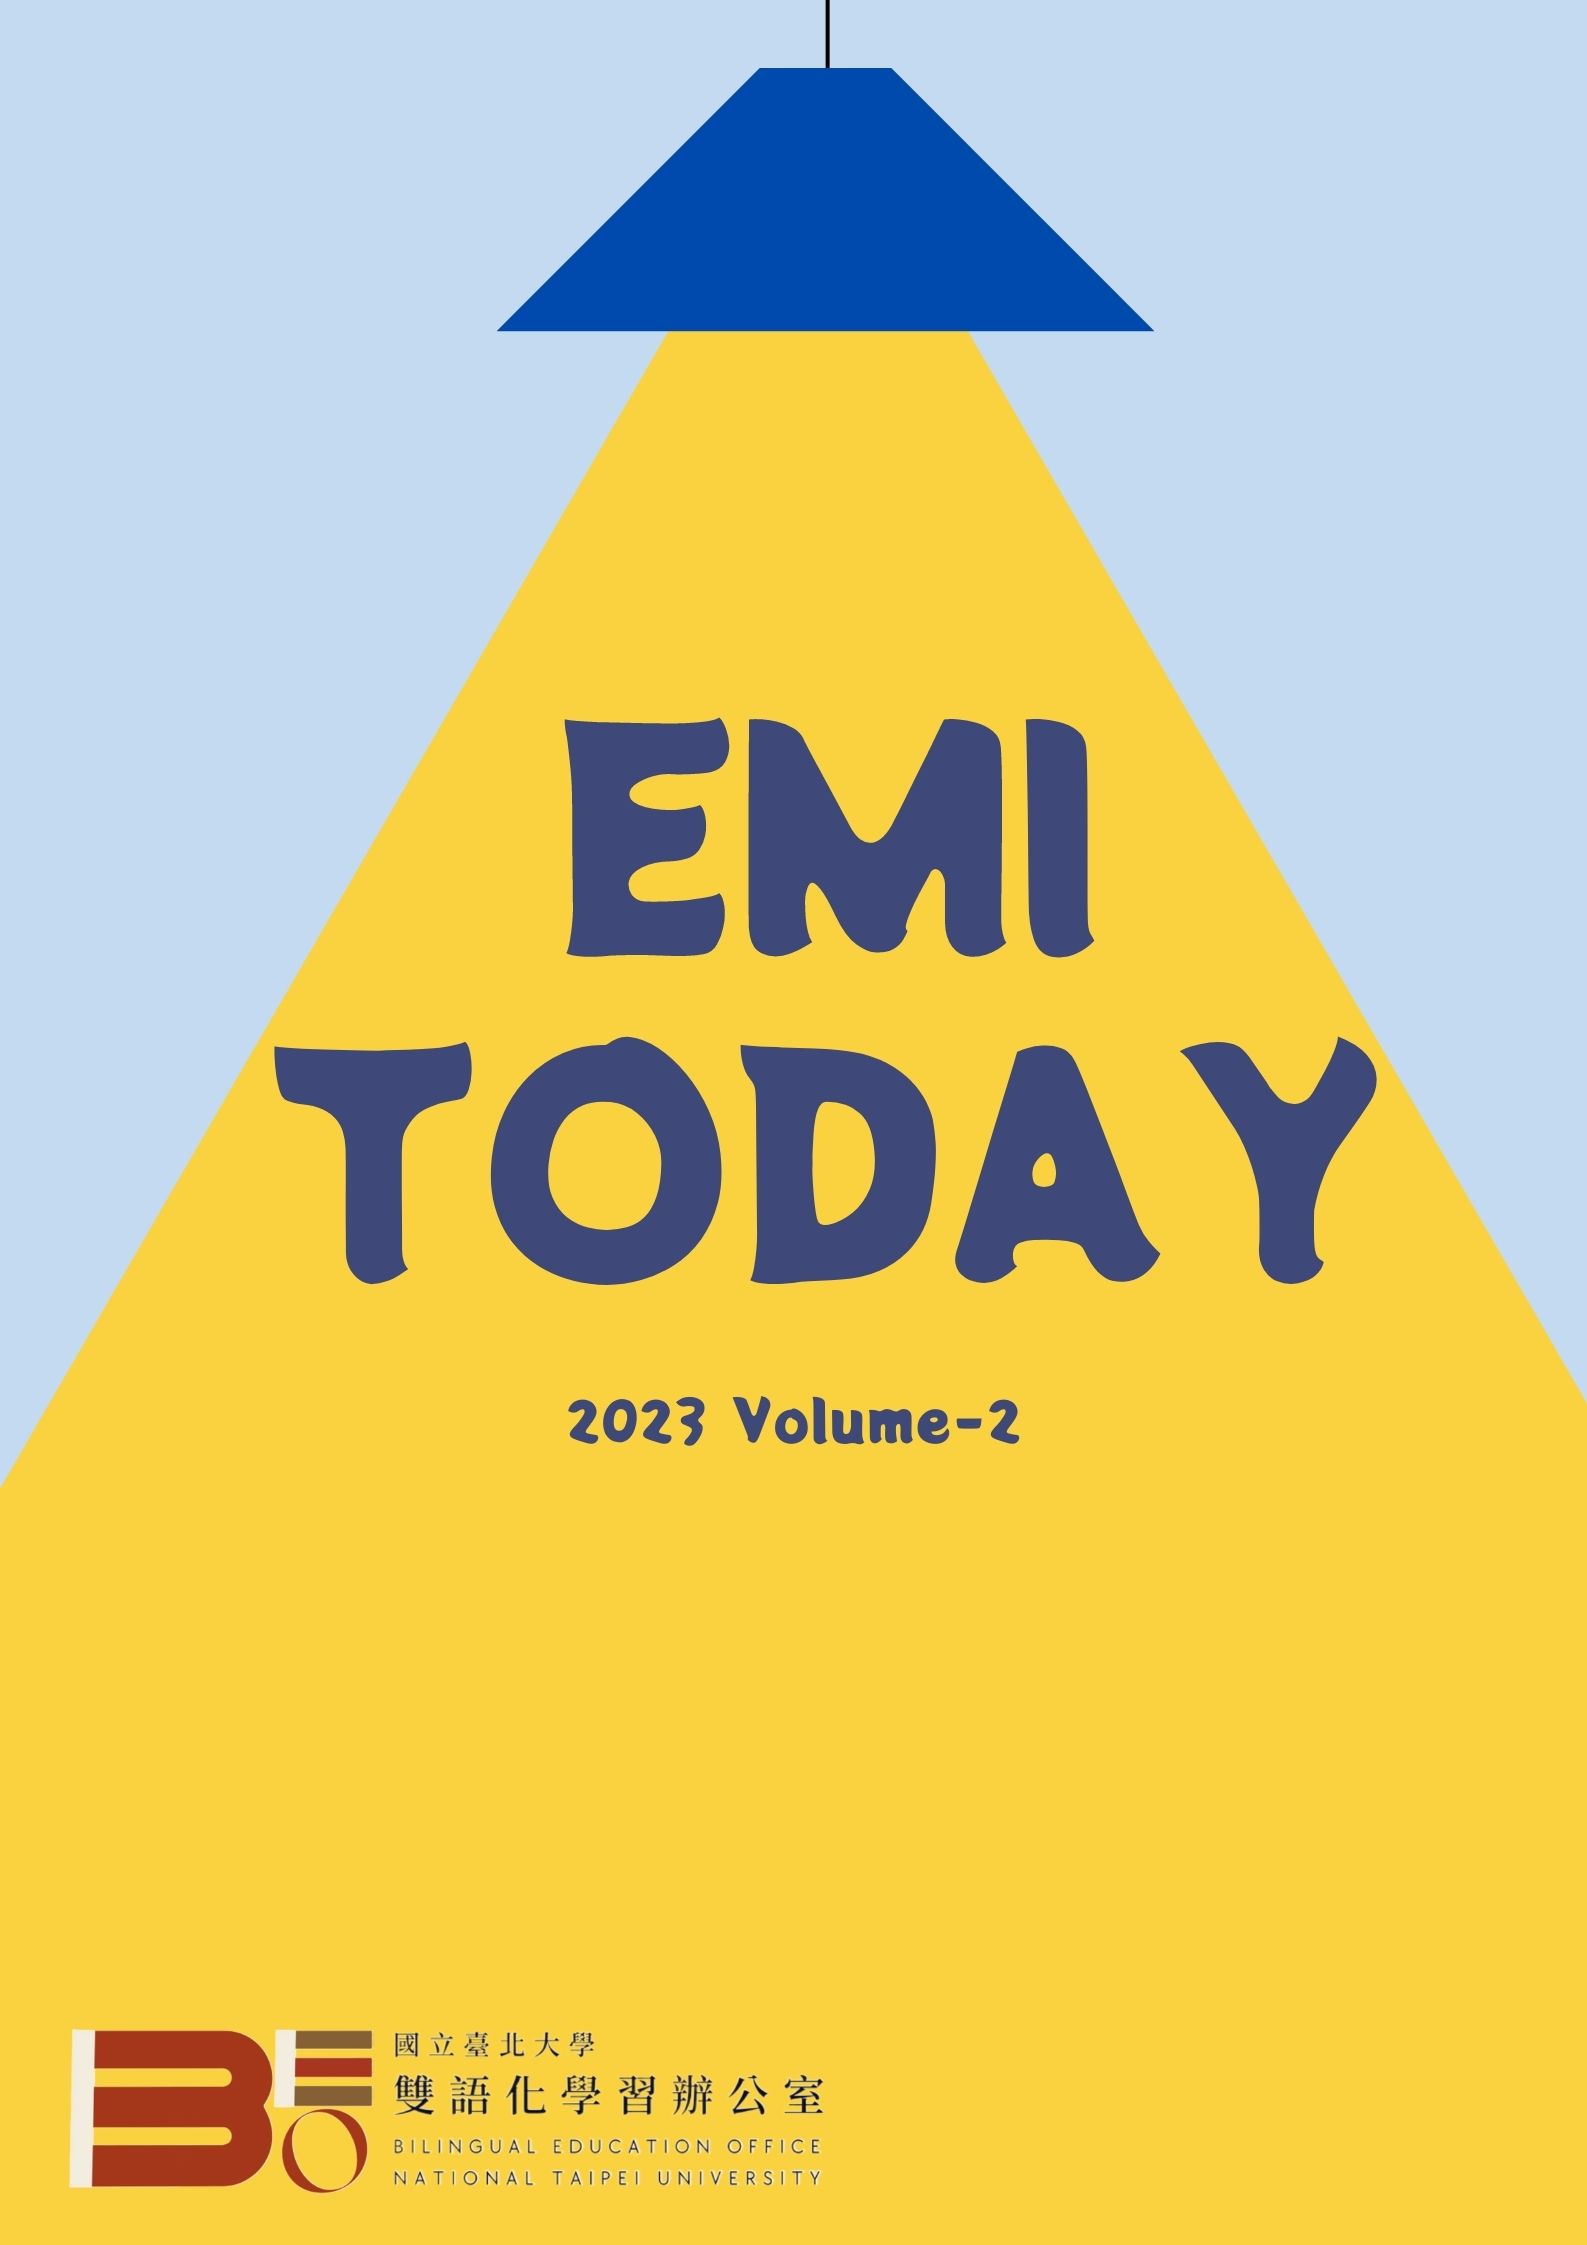 EMI TODAY Volume-2